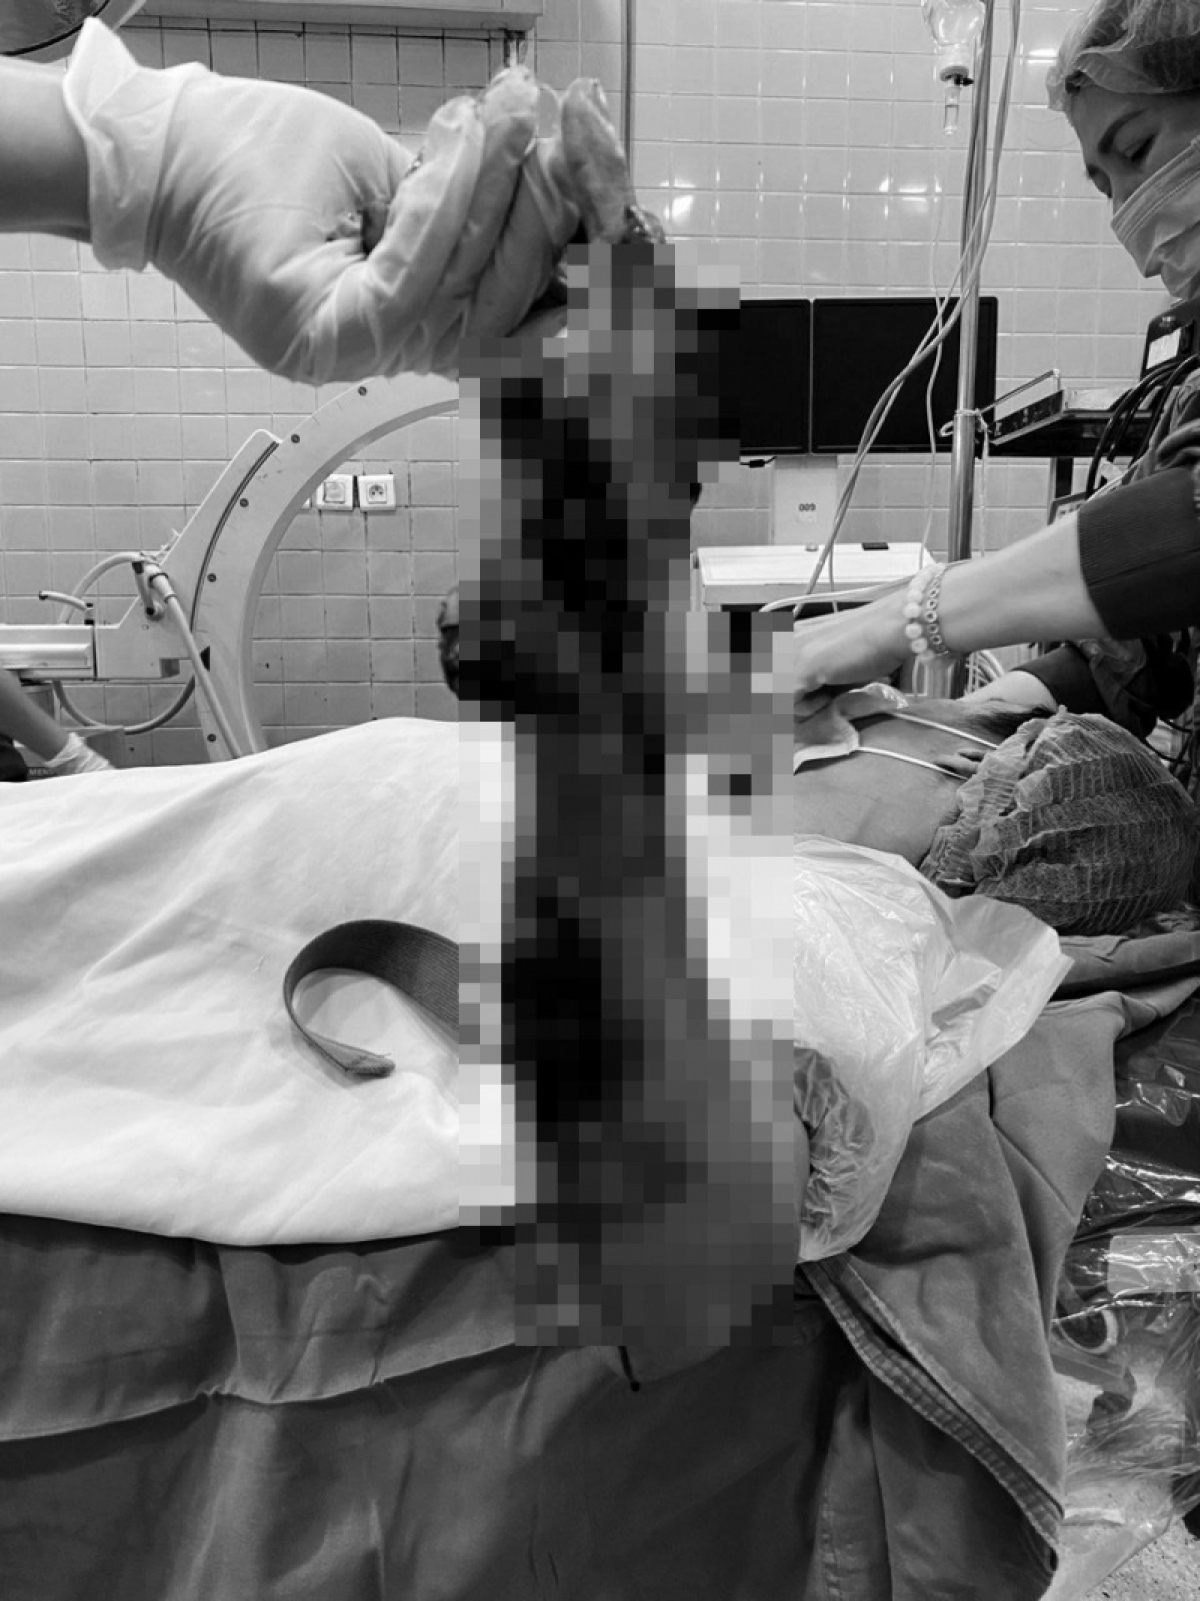 Phẫu thuật khẩn trong đêm cứu bàn tay bị máy cưa nghiền nát - Ảnh 1.